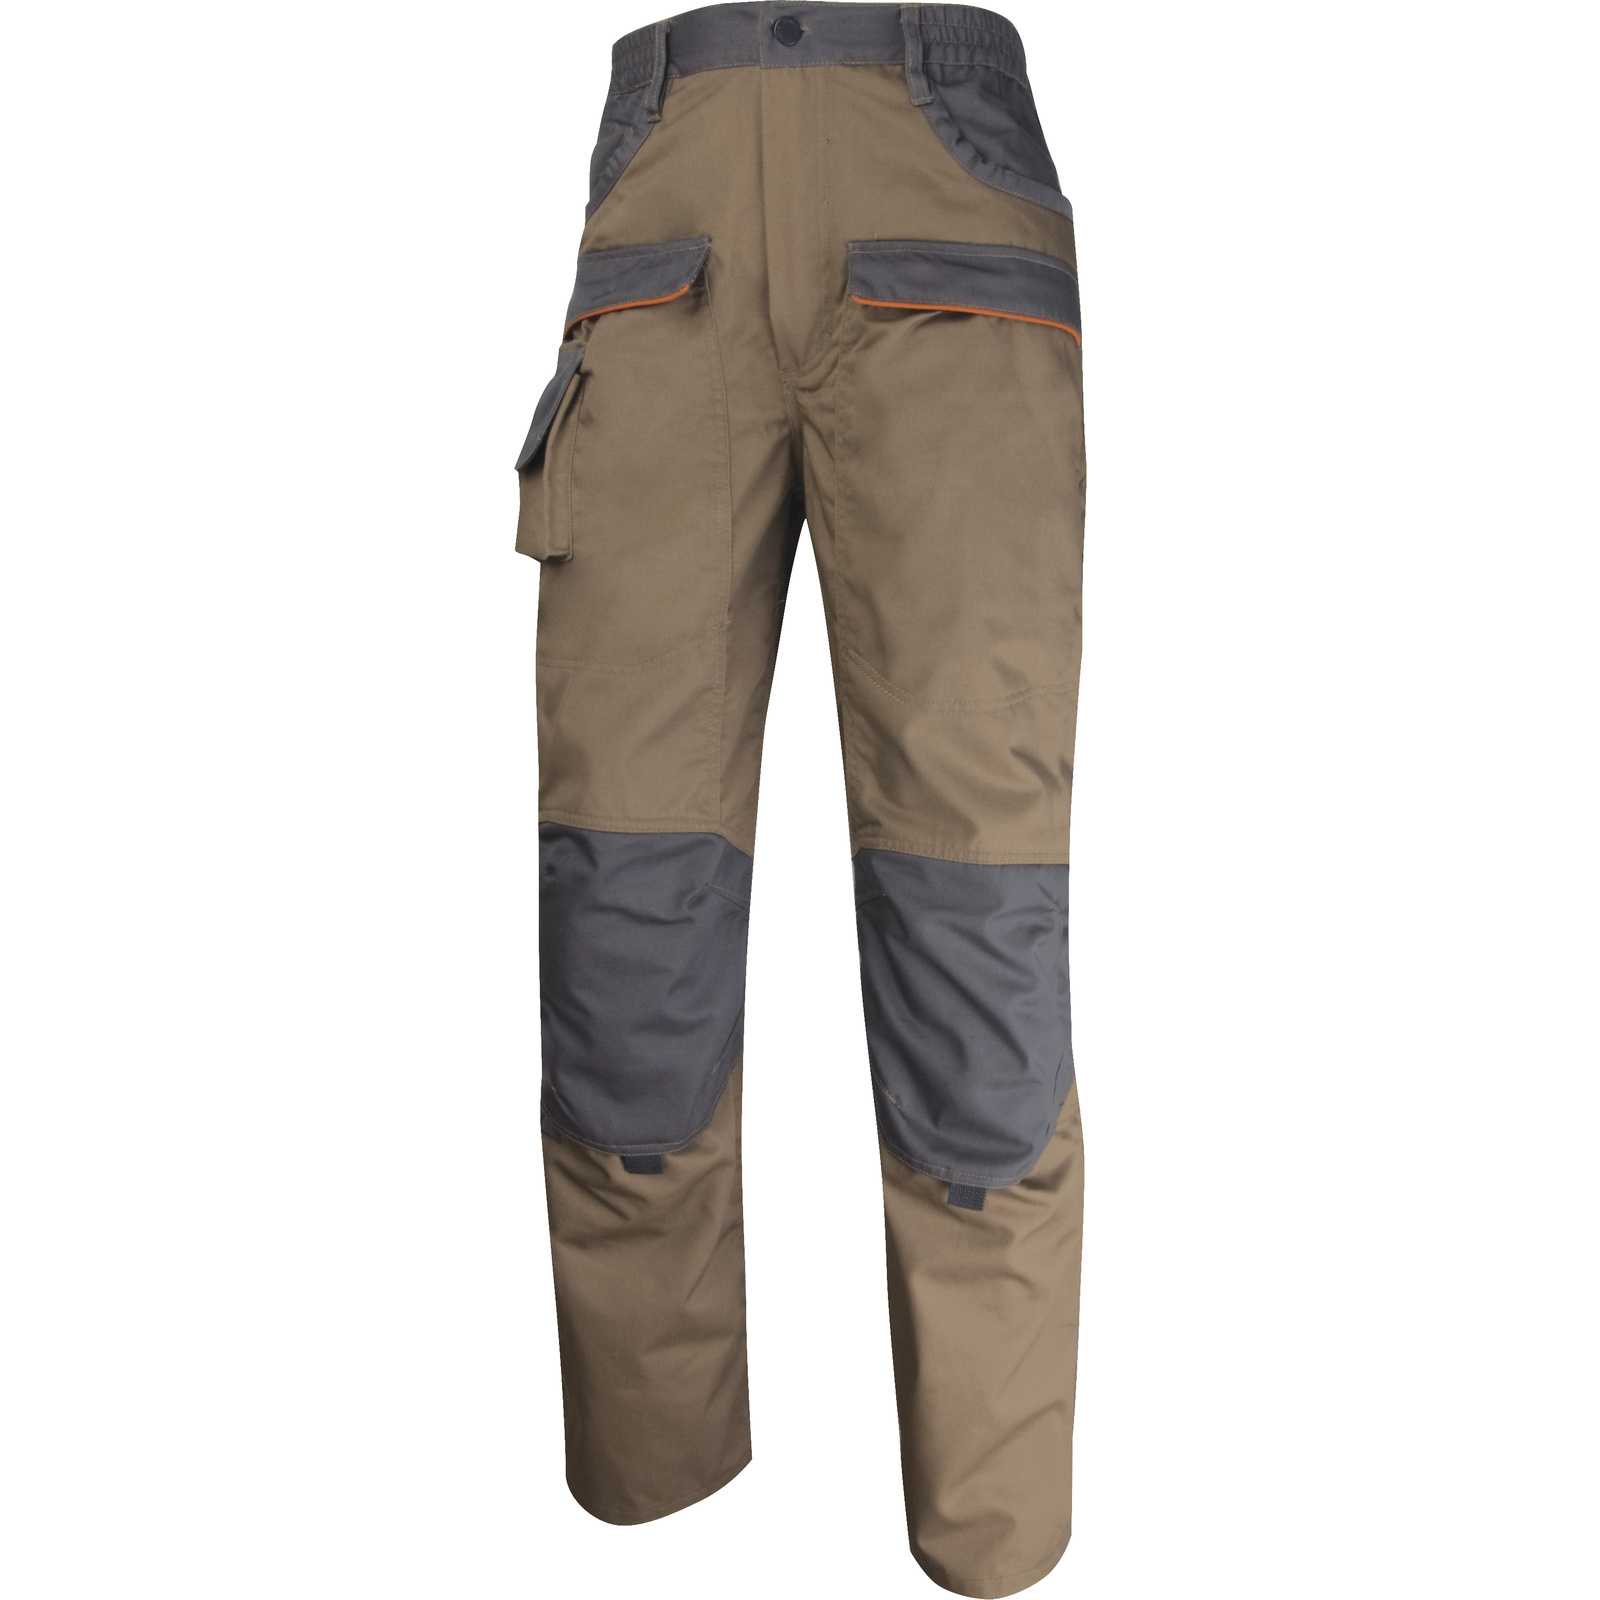 Рабочие мужские брюки: летние штаны и другая спецодежда с карманами по бокам. как ее выбрать?